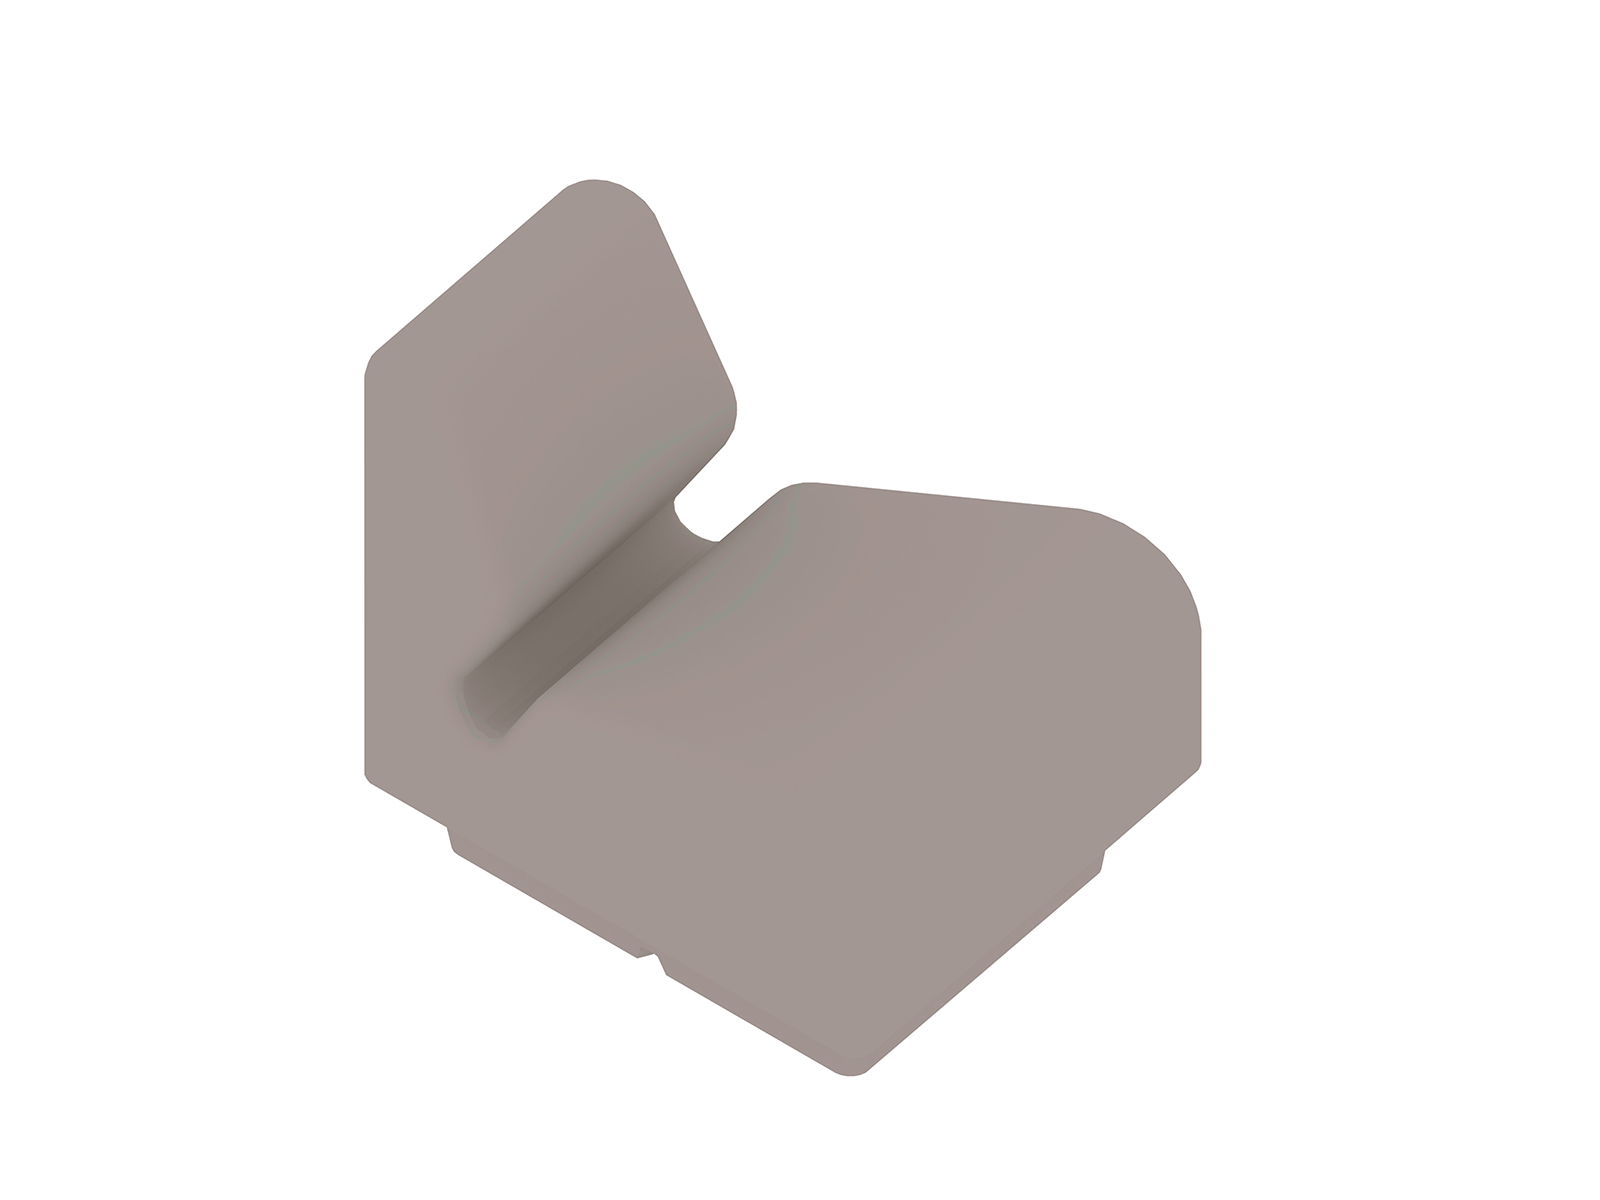 Un rendering generico - Seduta modulare Chadwick - incastro esterno - 22,5 gradi